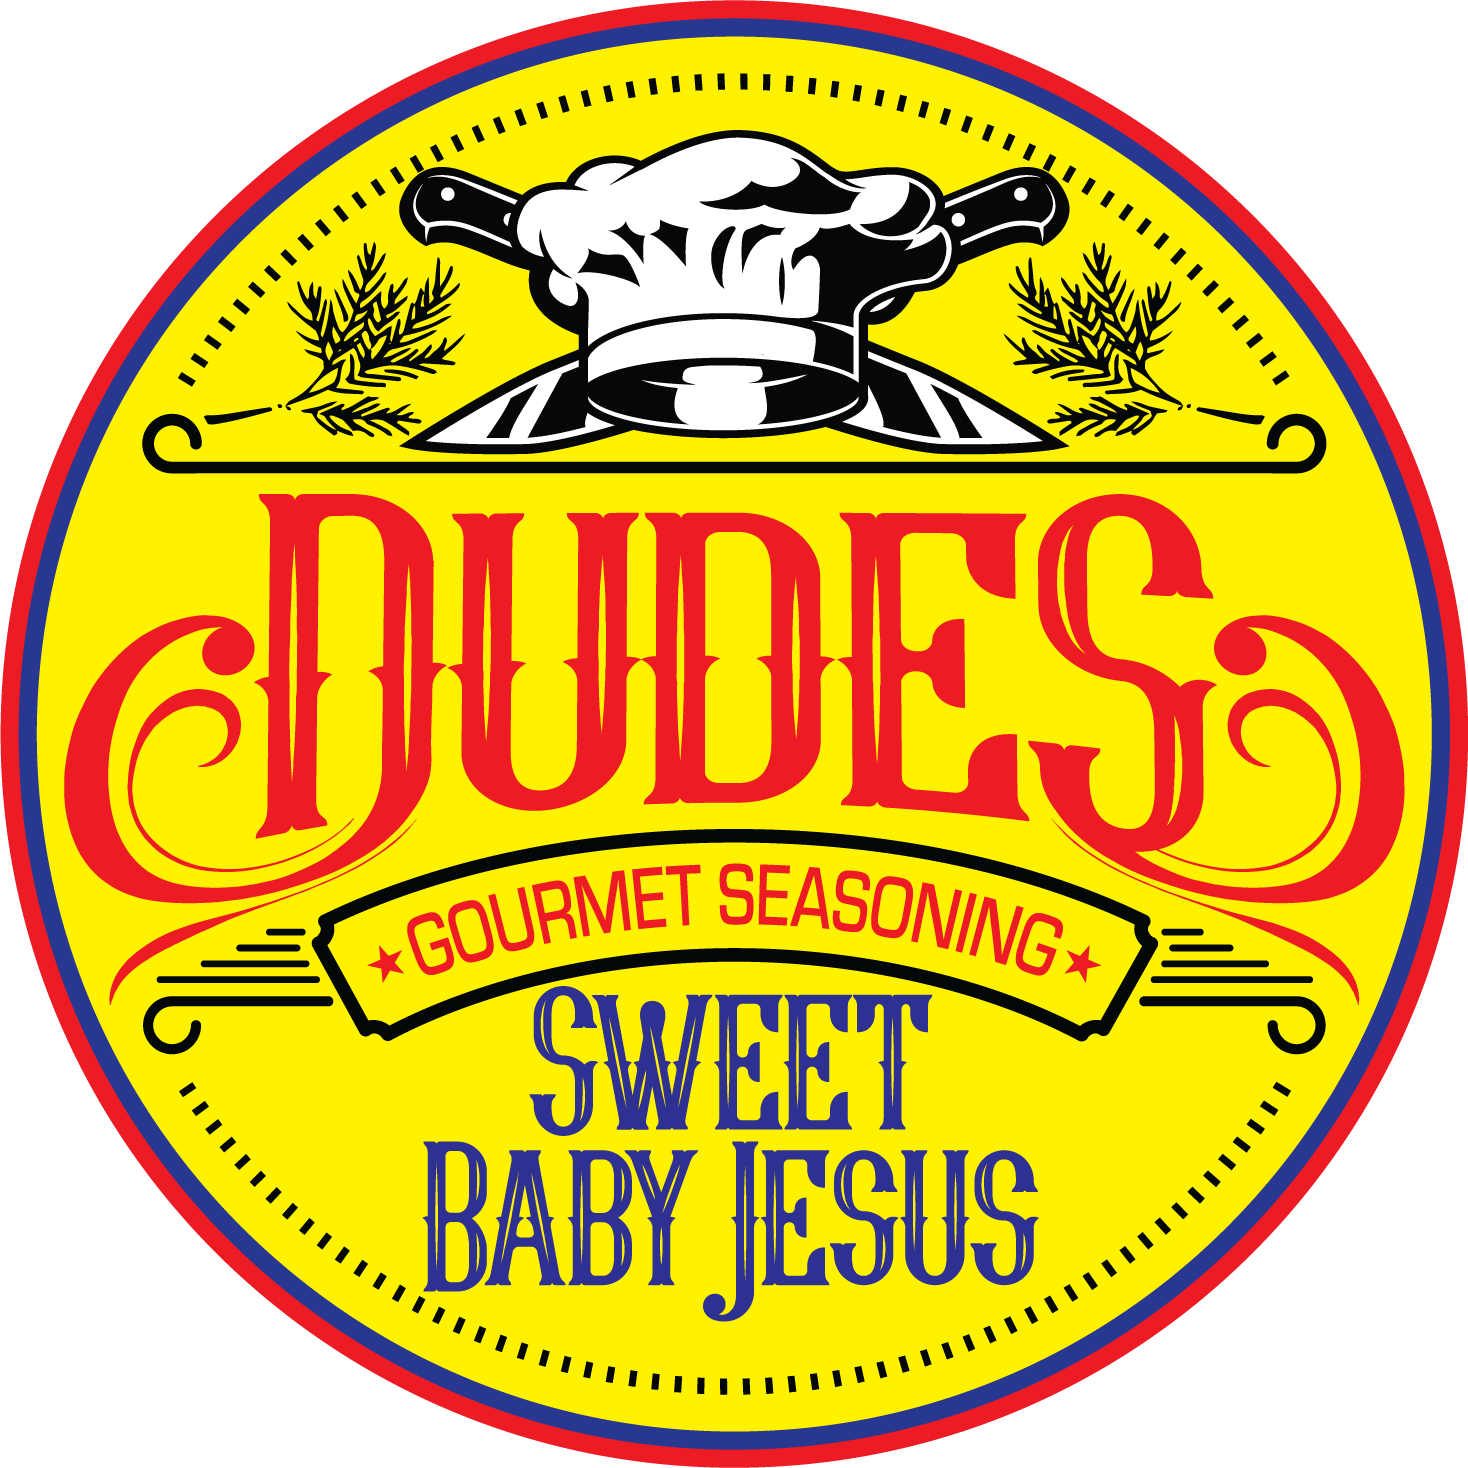 Sweet Baby Jesus